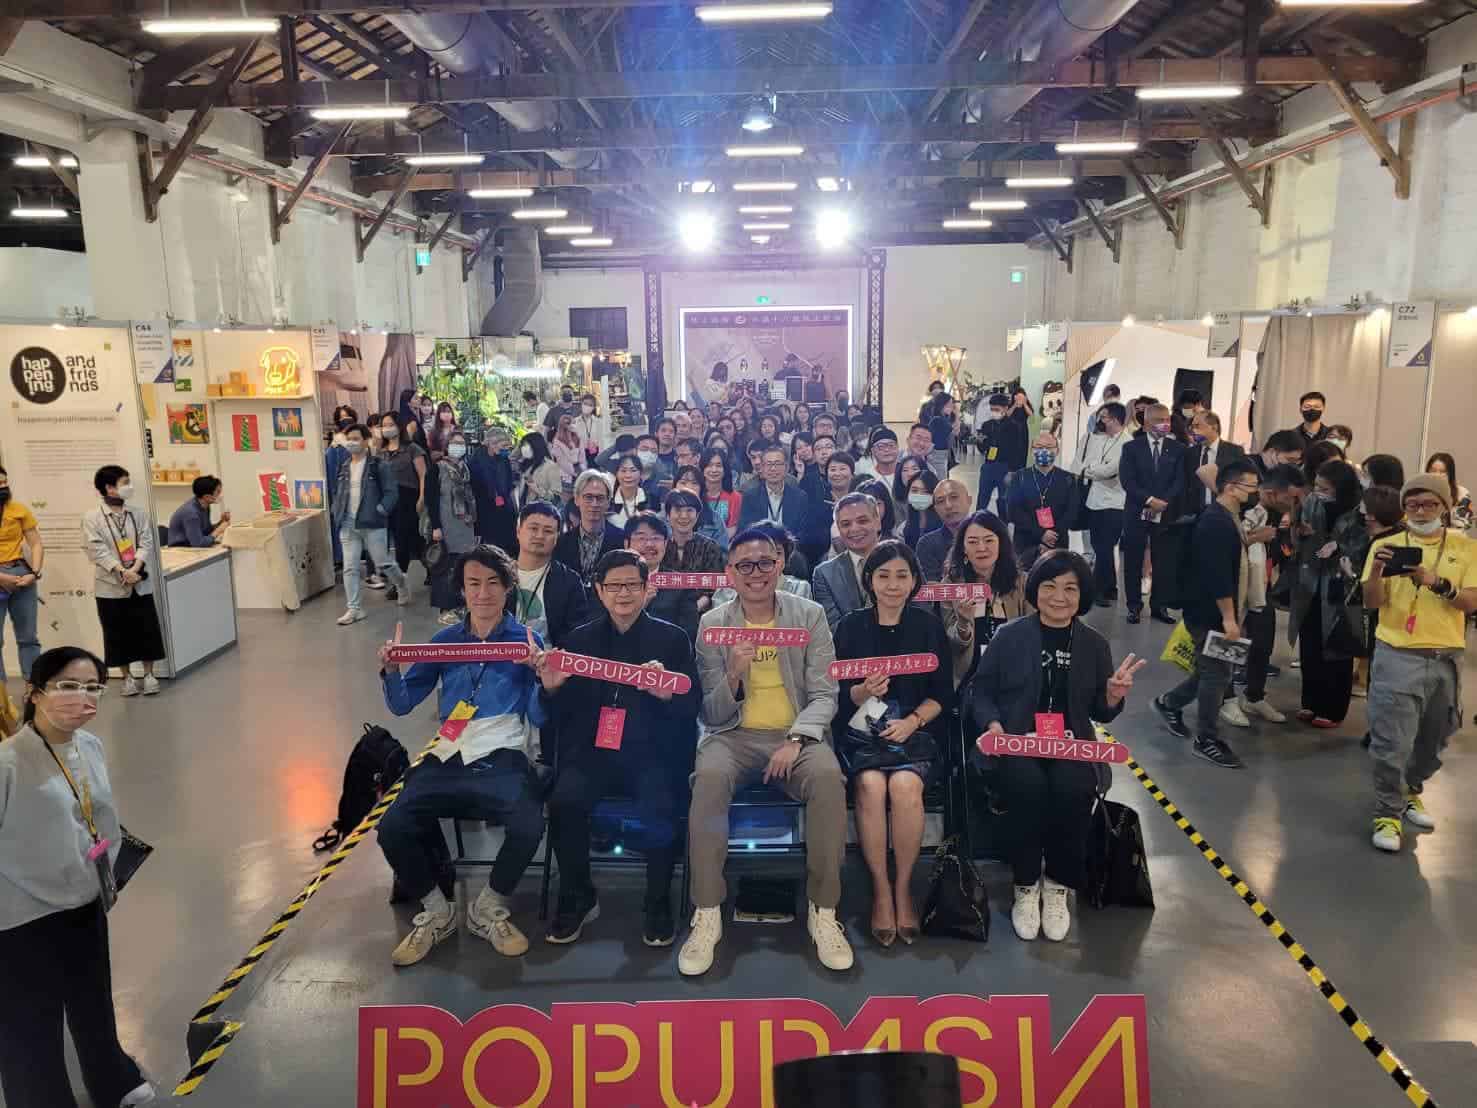 去年延期一年的第六屆「2022 Pop Up Asia 亞洲手創展」已於台北市松山文創園區落幕，為期四日的活動吸引超過2萬人購票入場，媒合商機超過5,000萬，是2022年底全亞洲最大型的生活風格展覽，也是全亞洲第一個以促進手作創業者與組織交流為核心的手作創業展會，至今已經吸引了超過16個國家超過30個城市與上千個參展商與買家參展，協助亞洲生活風格品牌進行有意義的規模化。